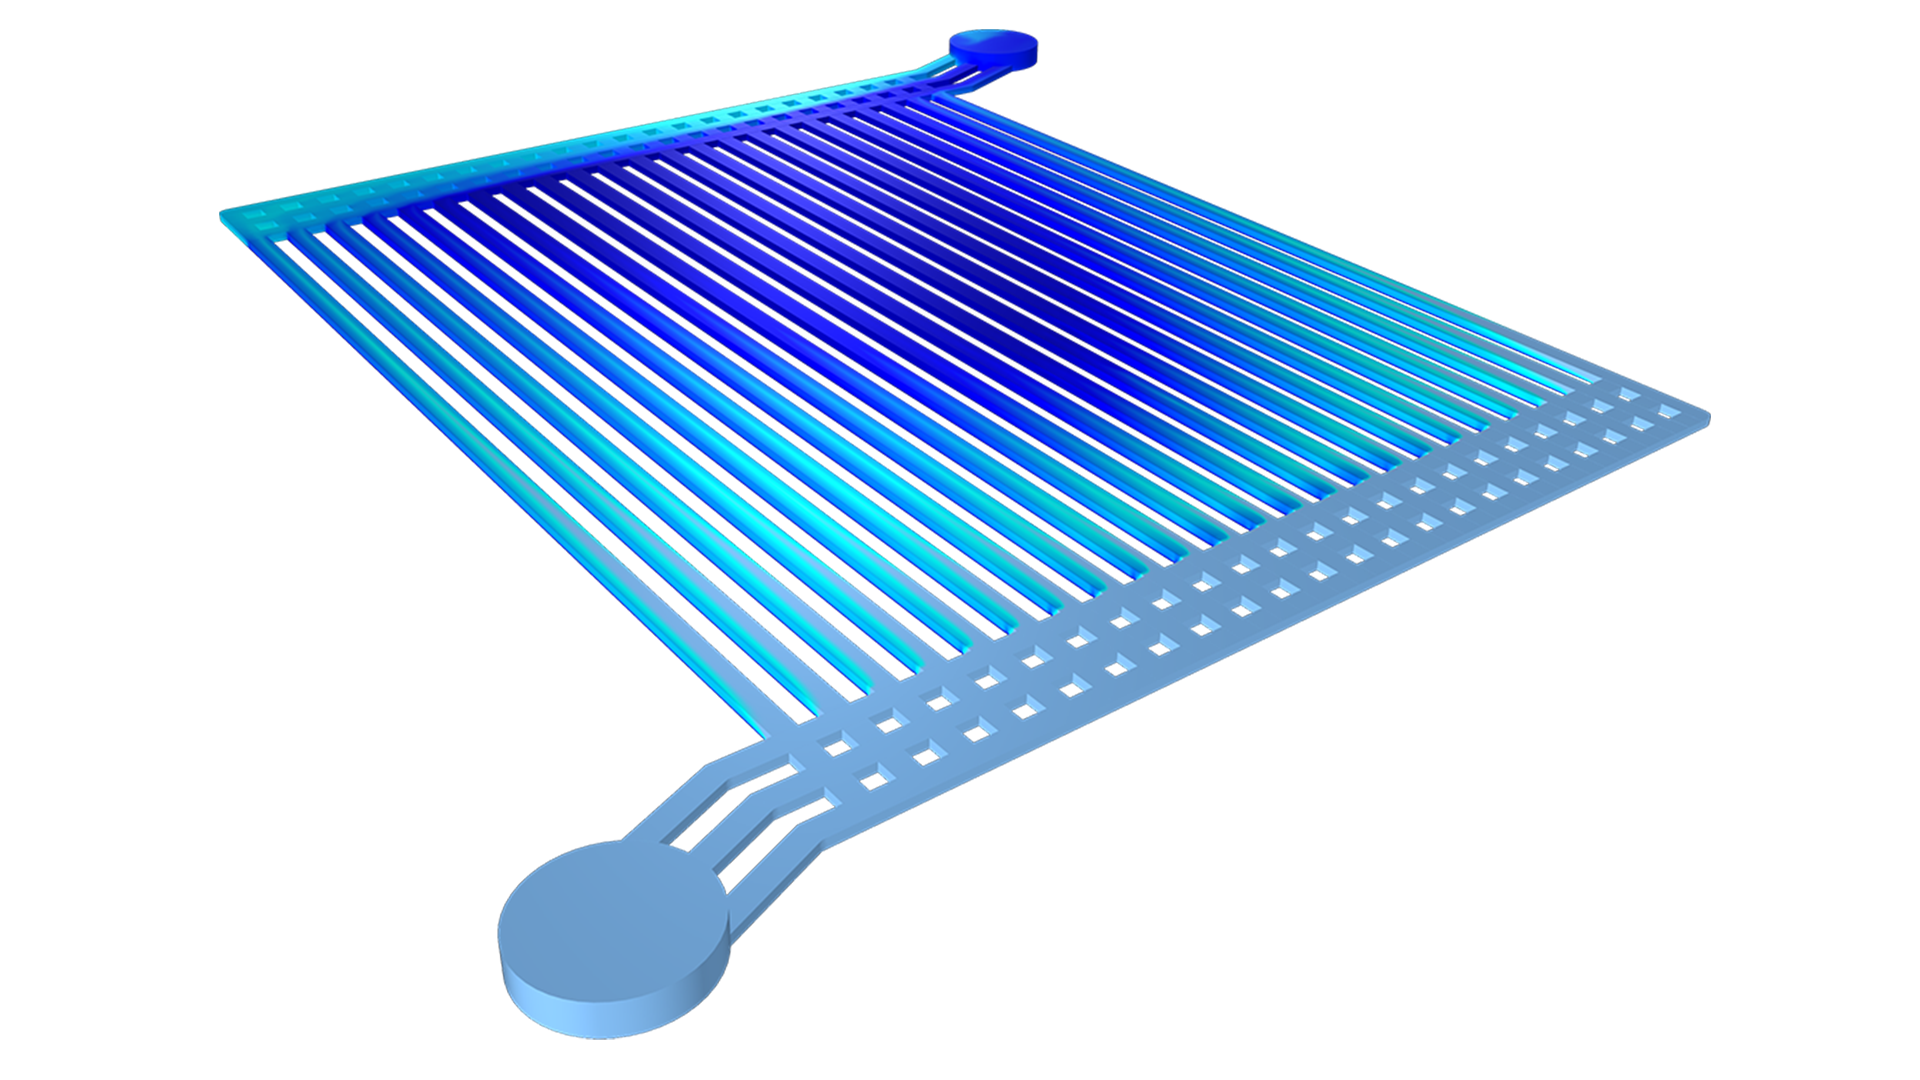 Un modèle d'électrolyseur à eau avec la fraction volumique du gaz visualisée dans un gradient de couleur allant du bleu foncé au bleu clair.